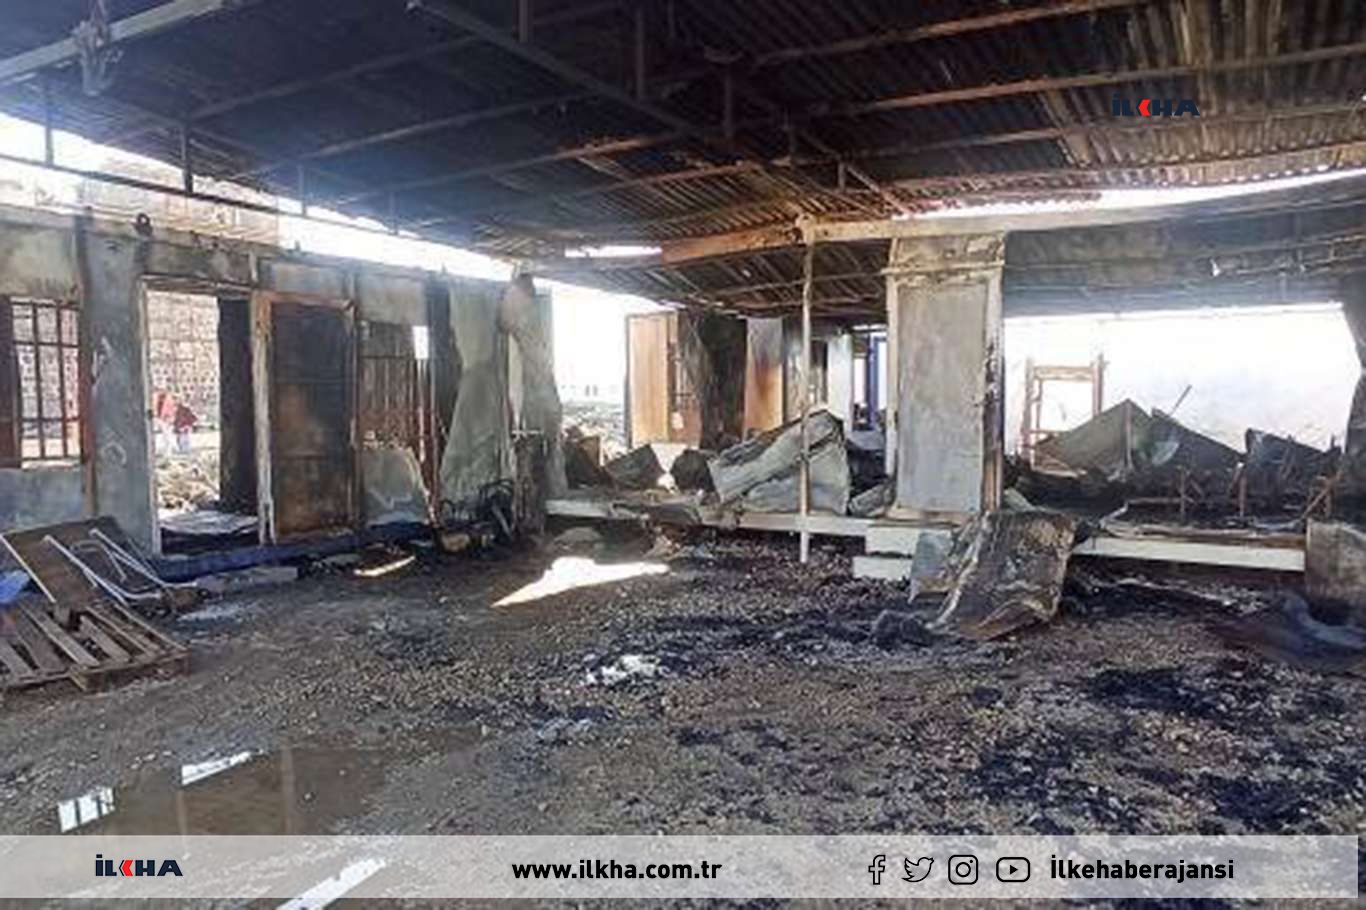 Diyarbakırda evlerin camını kıran ve konteynırları yakan 2 kişi yakalandı